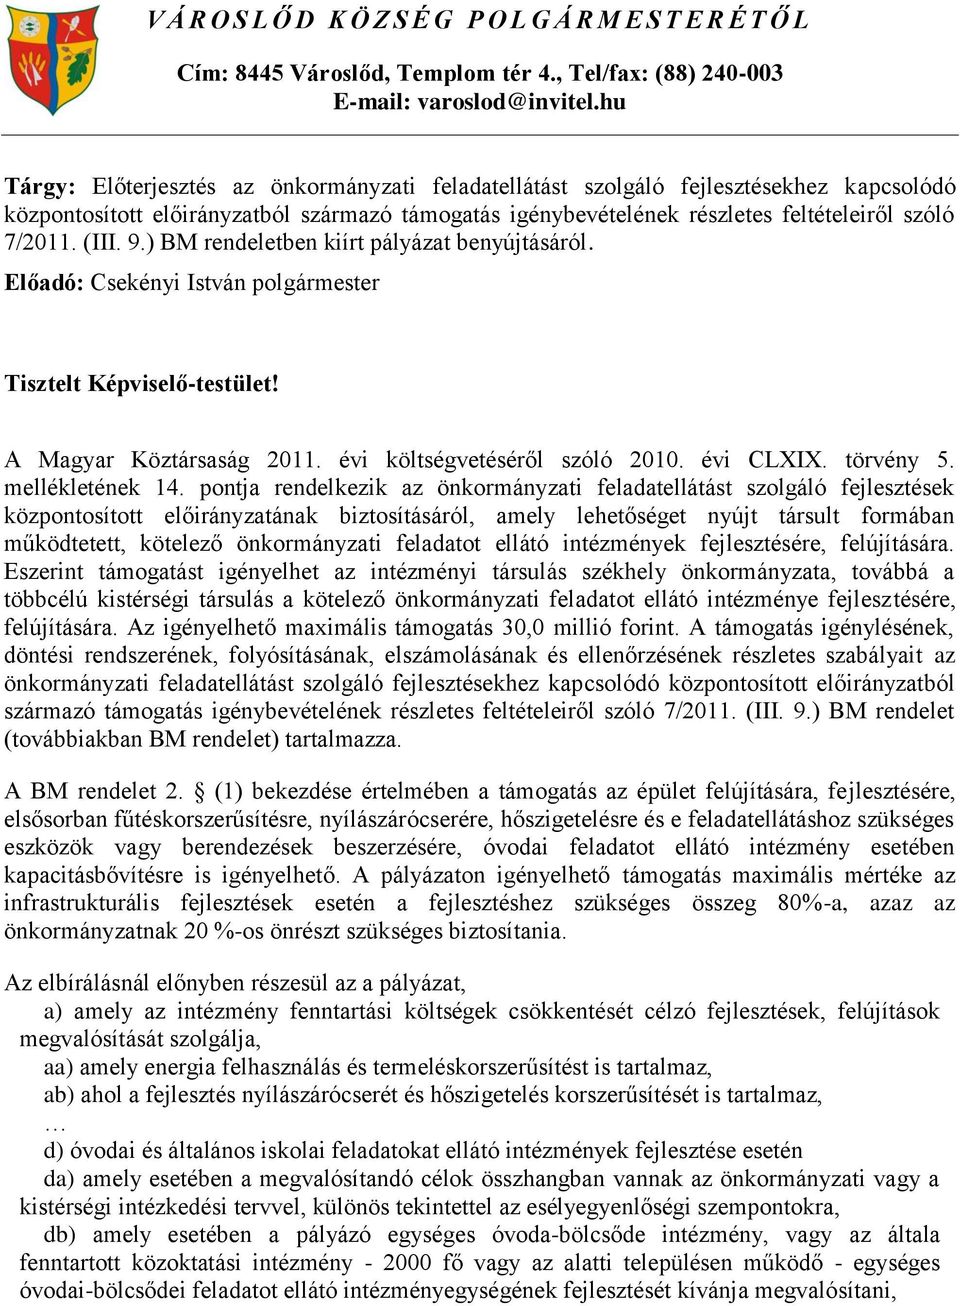 (III. 9.) BM rendeletben kiírt pályázat benyújtásáról. Tisztelt Képviselő-testület! A Magyar Köztársaság 2011. évi költségvetéséről szóló 2010. évi CLXIX. törvény 5. mellékletének 14.